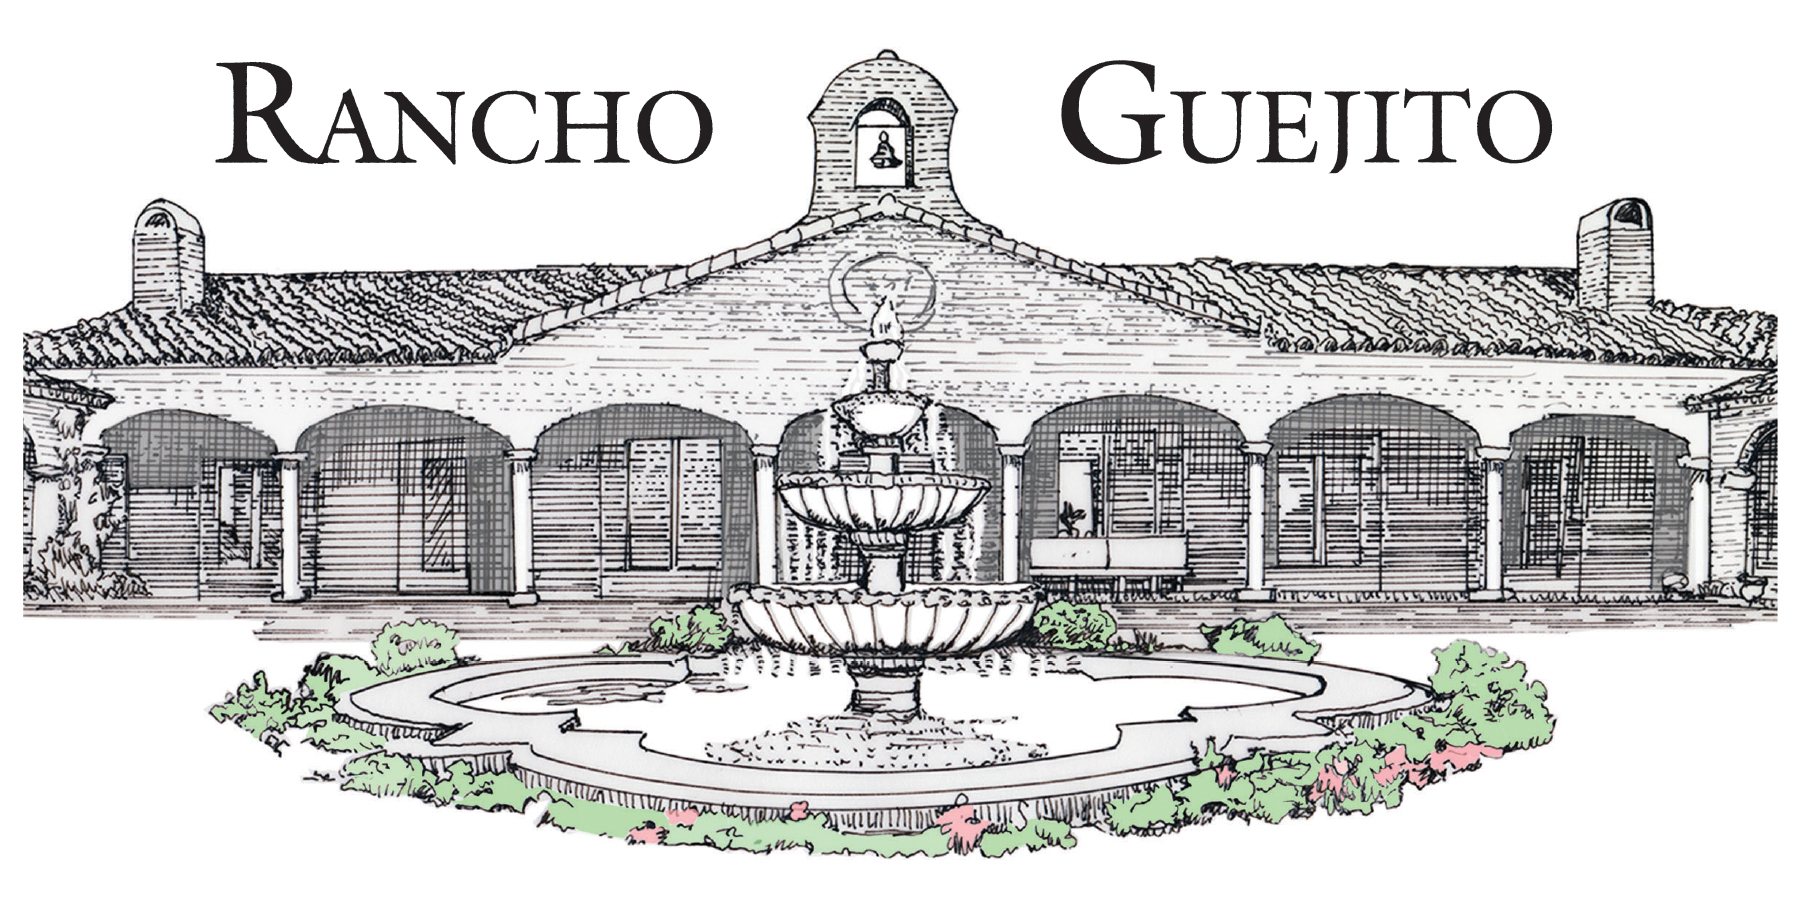 Rancho Guejito